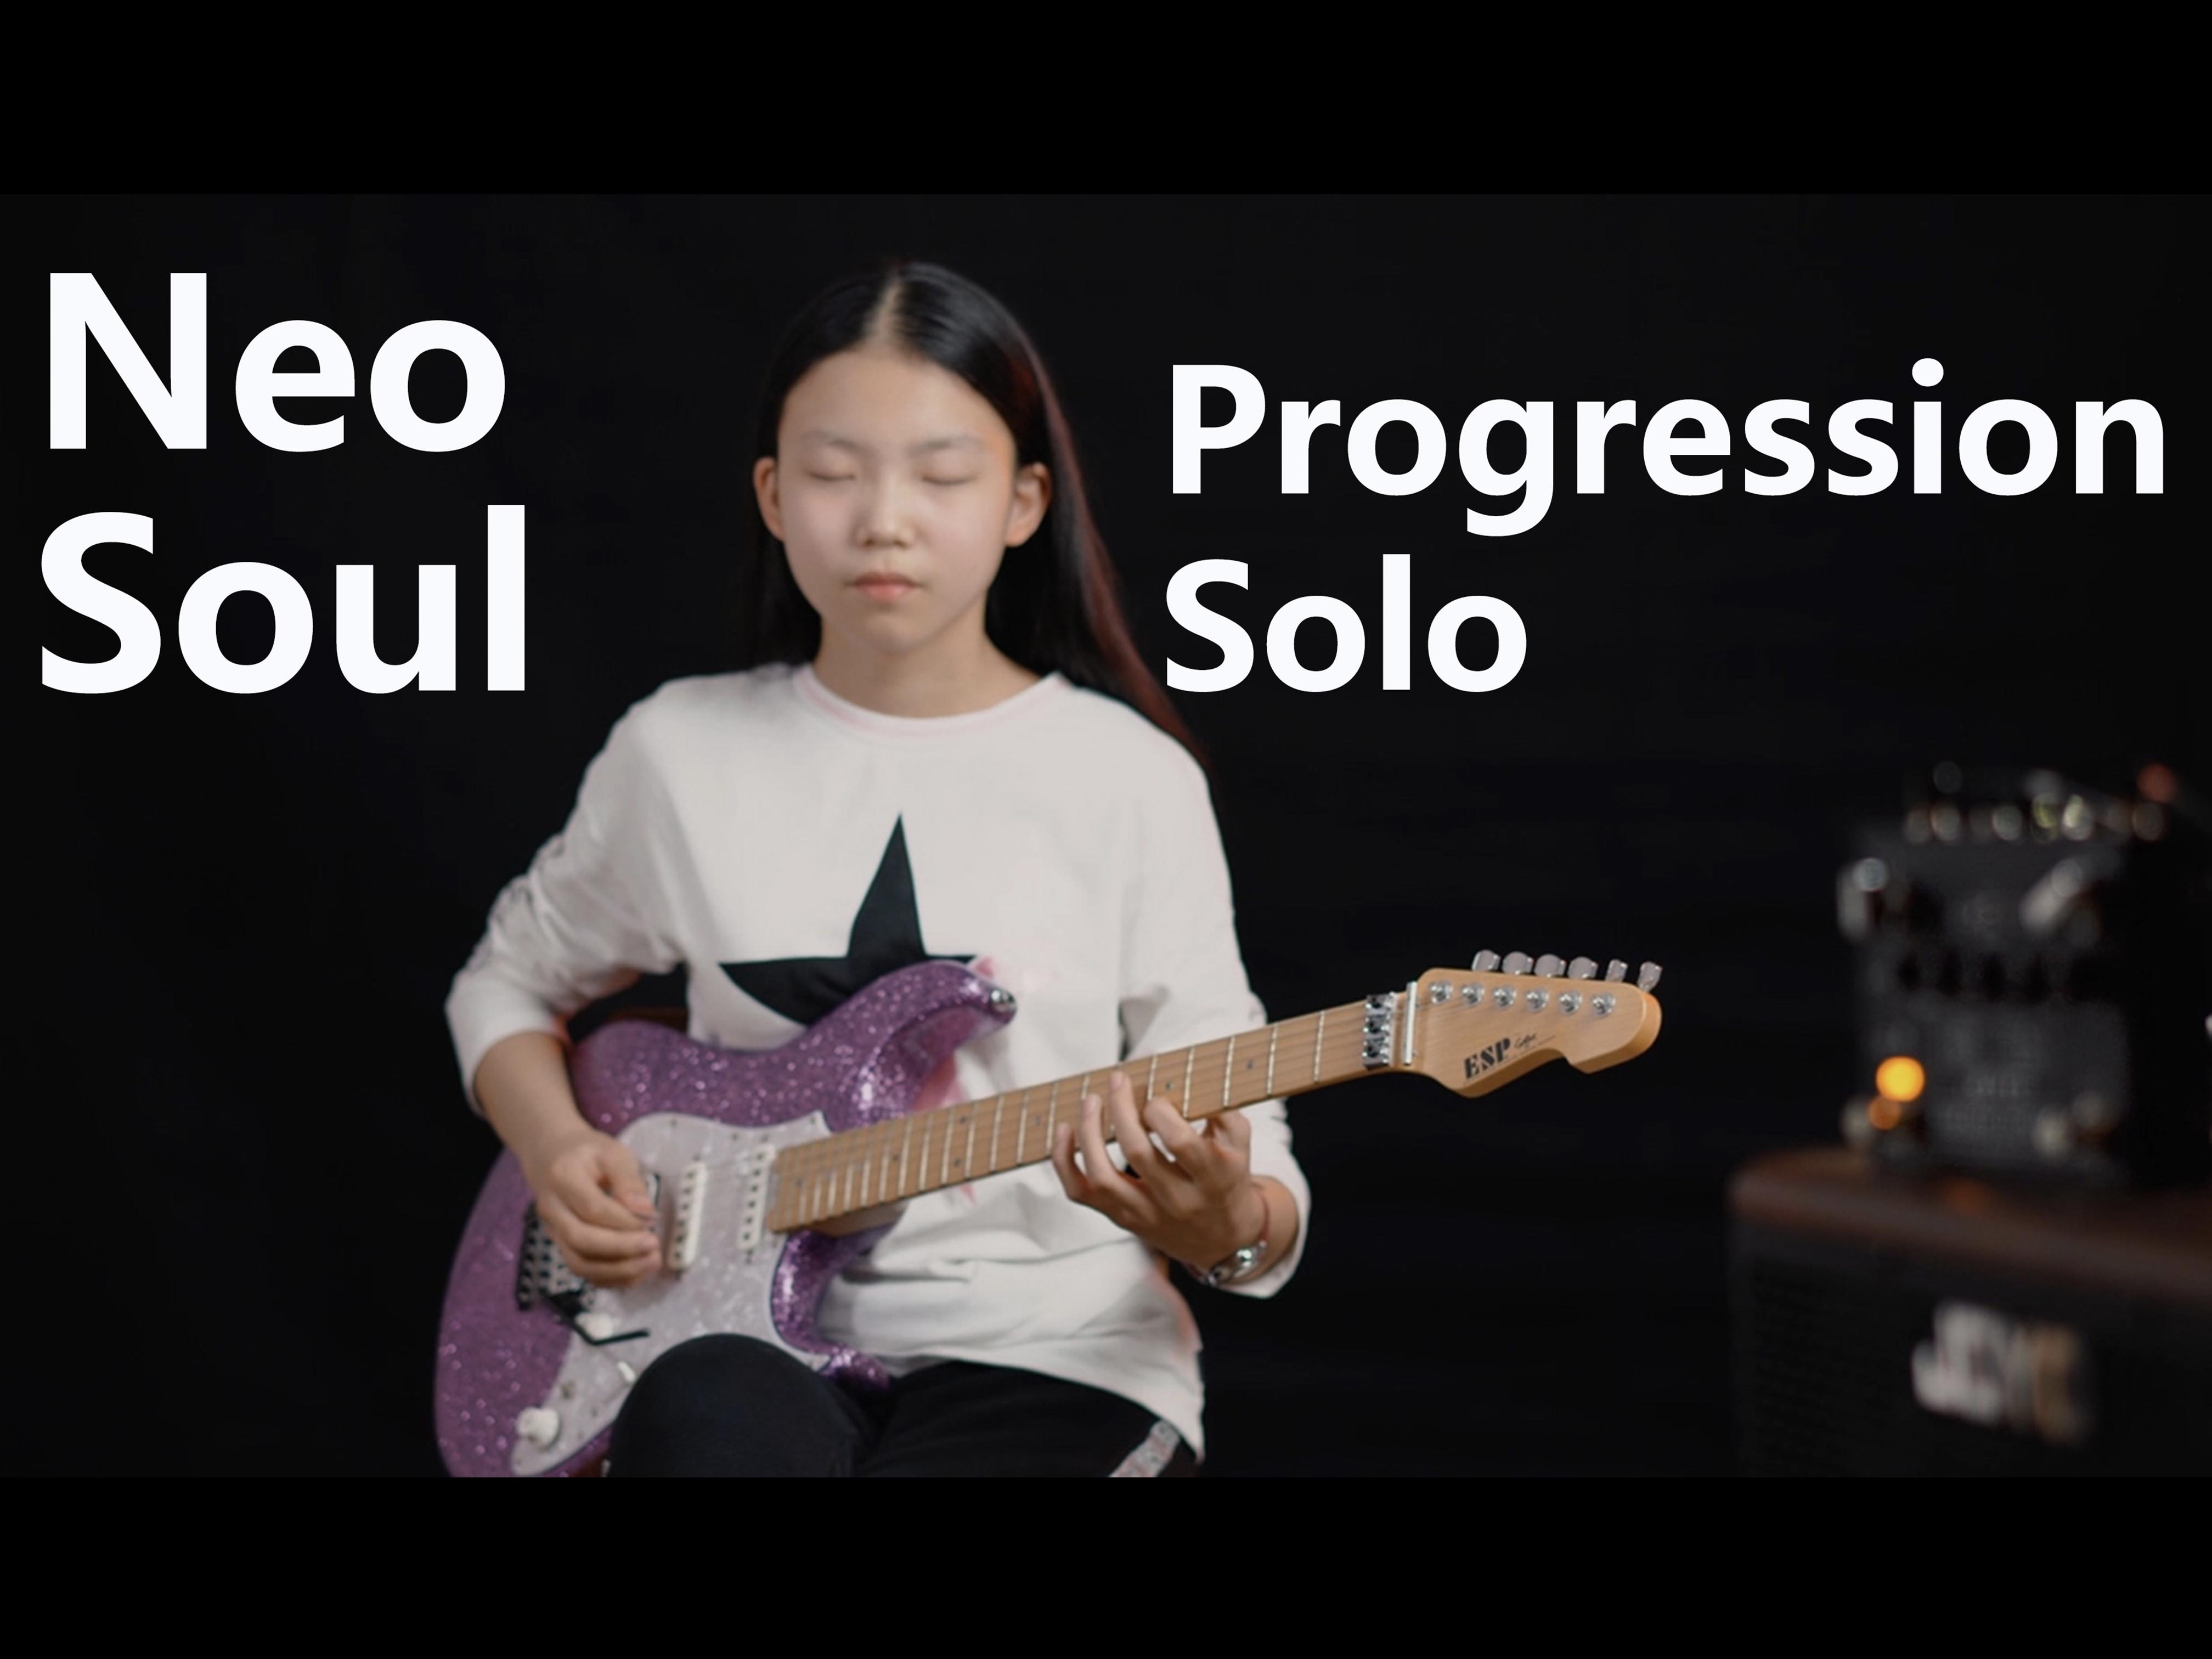 Neo Soul Progression / solo （Royziv） Cover by YOYO